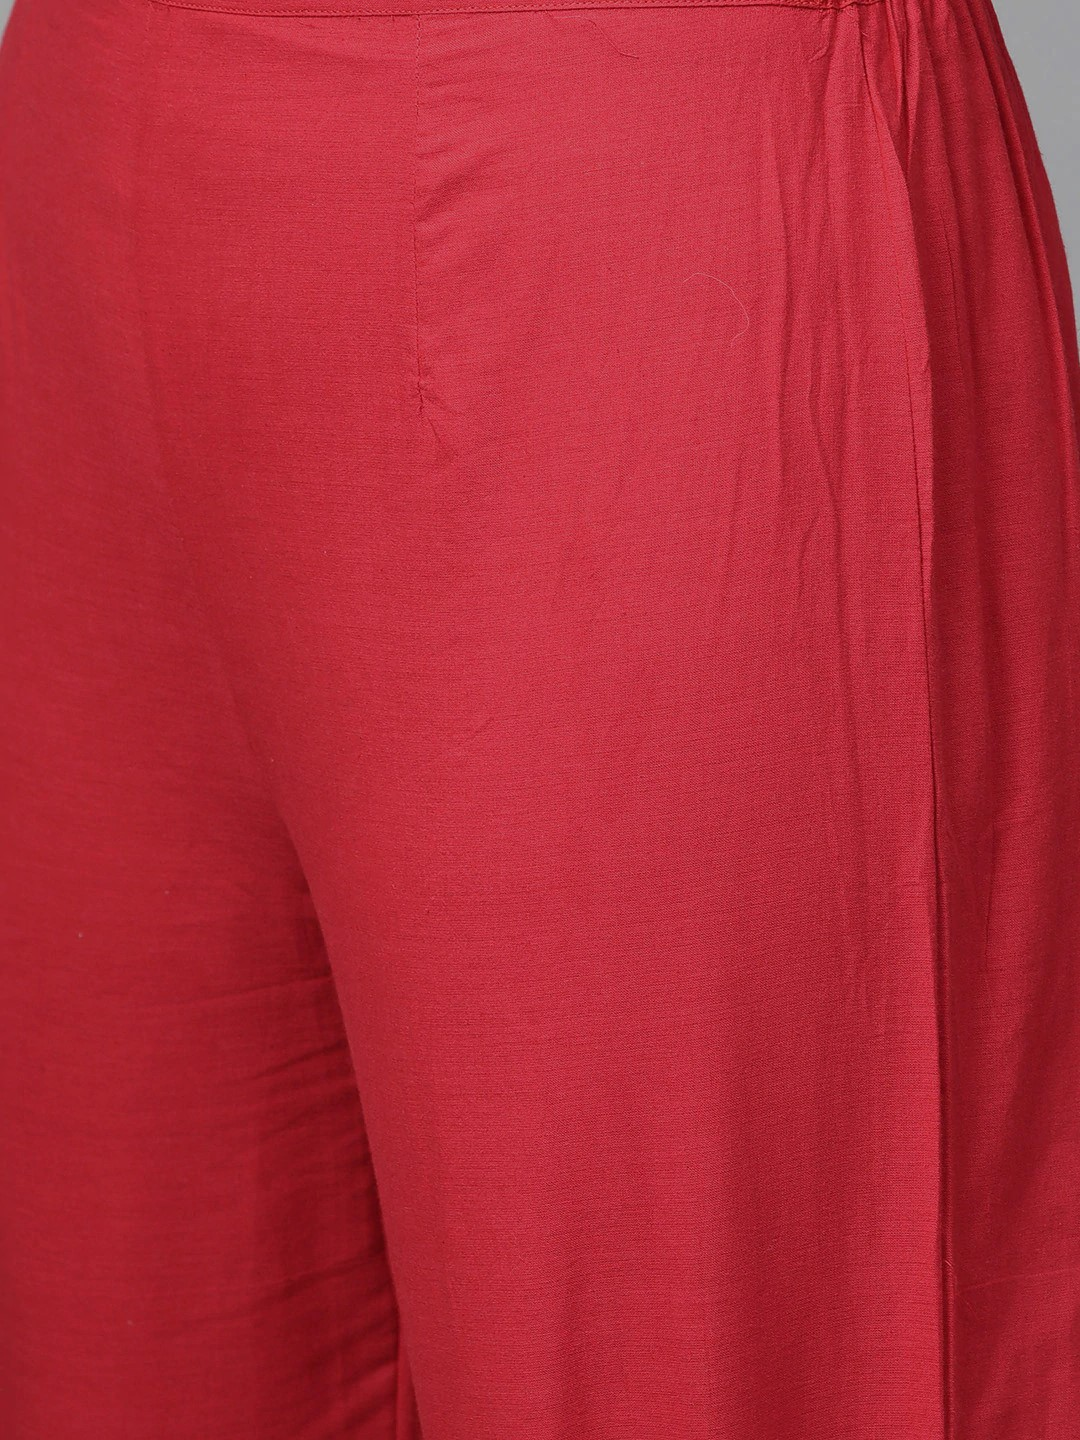 Wahe-NOOR Women's Beige & Red Yoke Design Kurta With Palazzos - Distacart